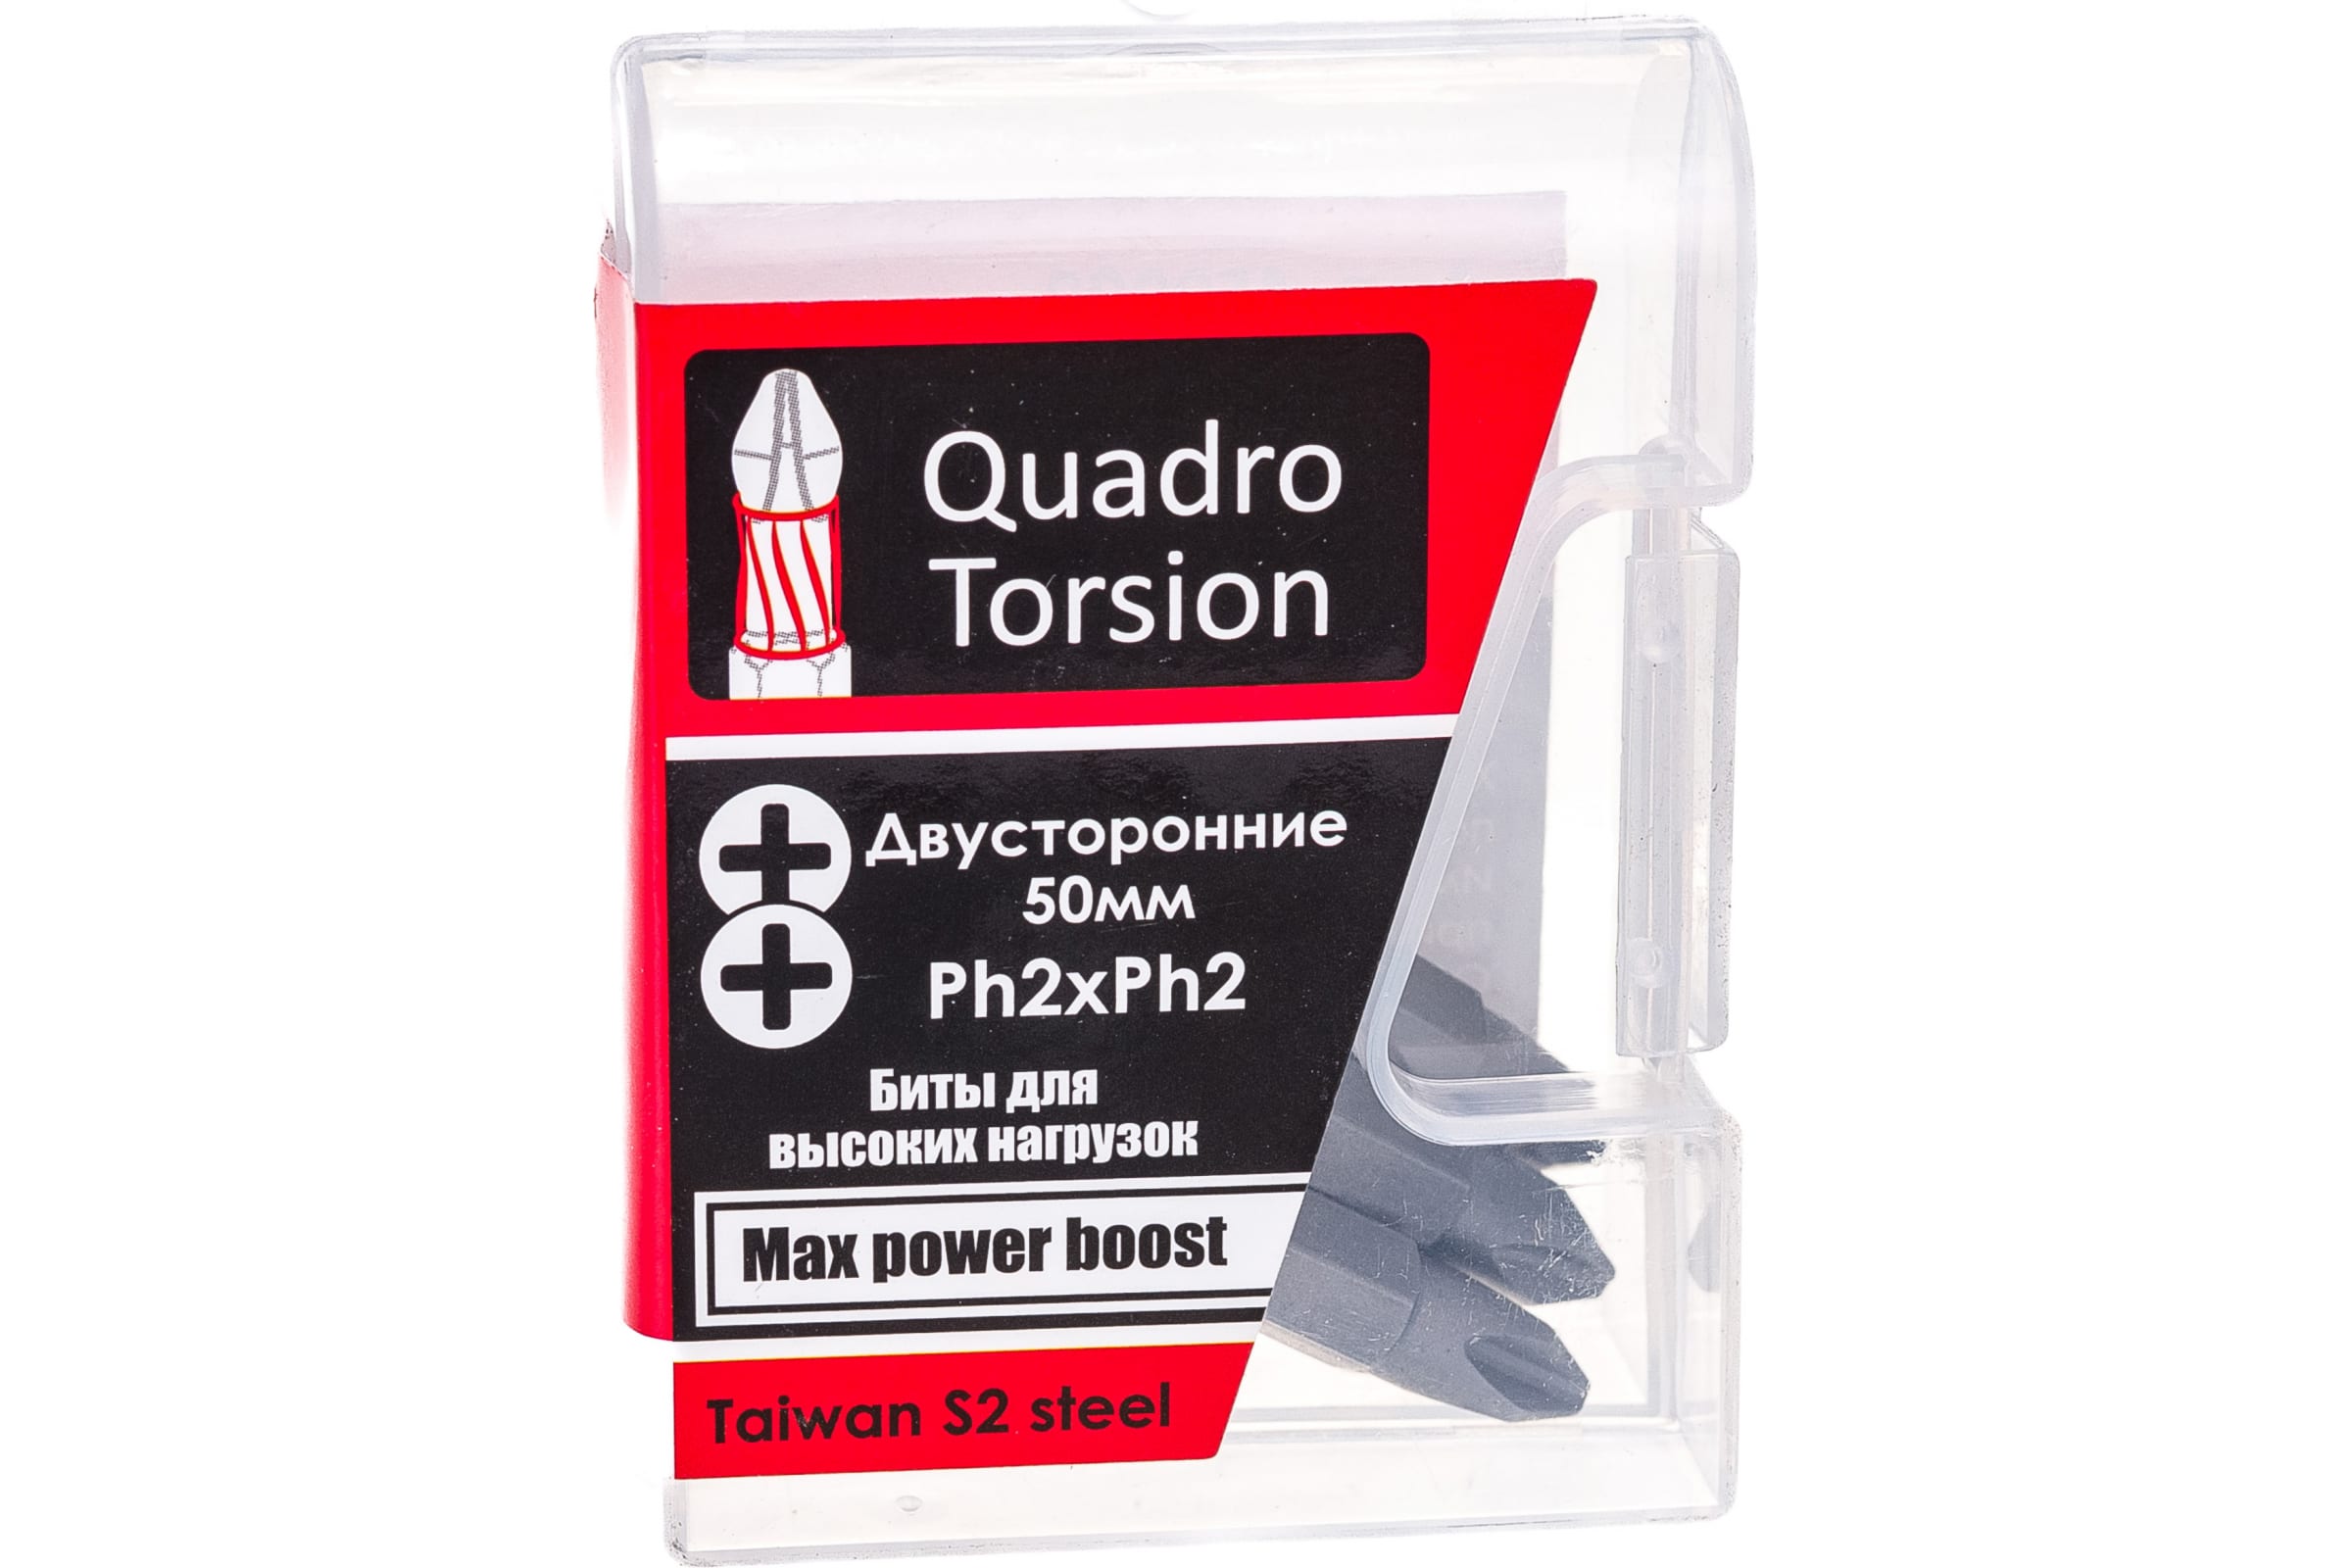 Quadro Torsion бита 1/4 двусторонняя Ph2xPh2 - 50мм 5шт./кор. 450022 шестигранная бита quadro torsion